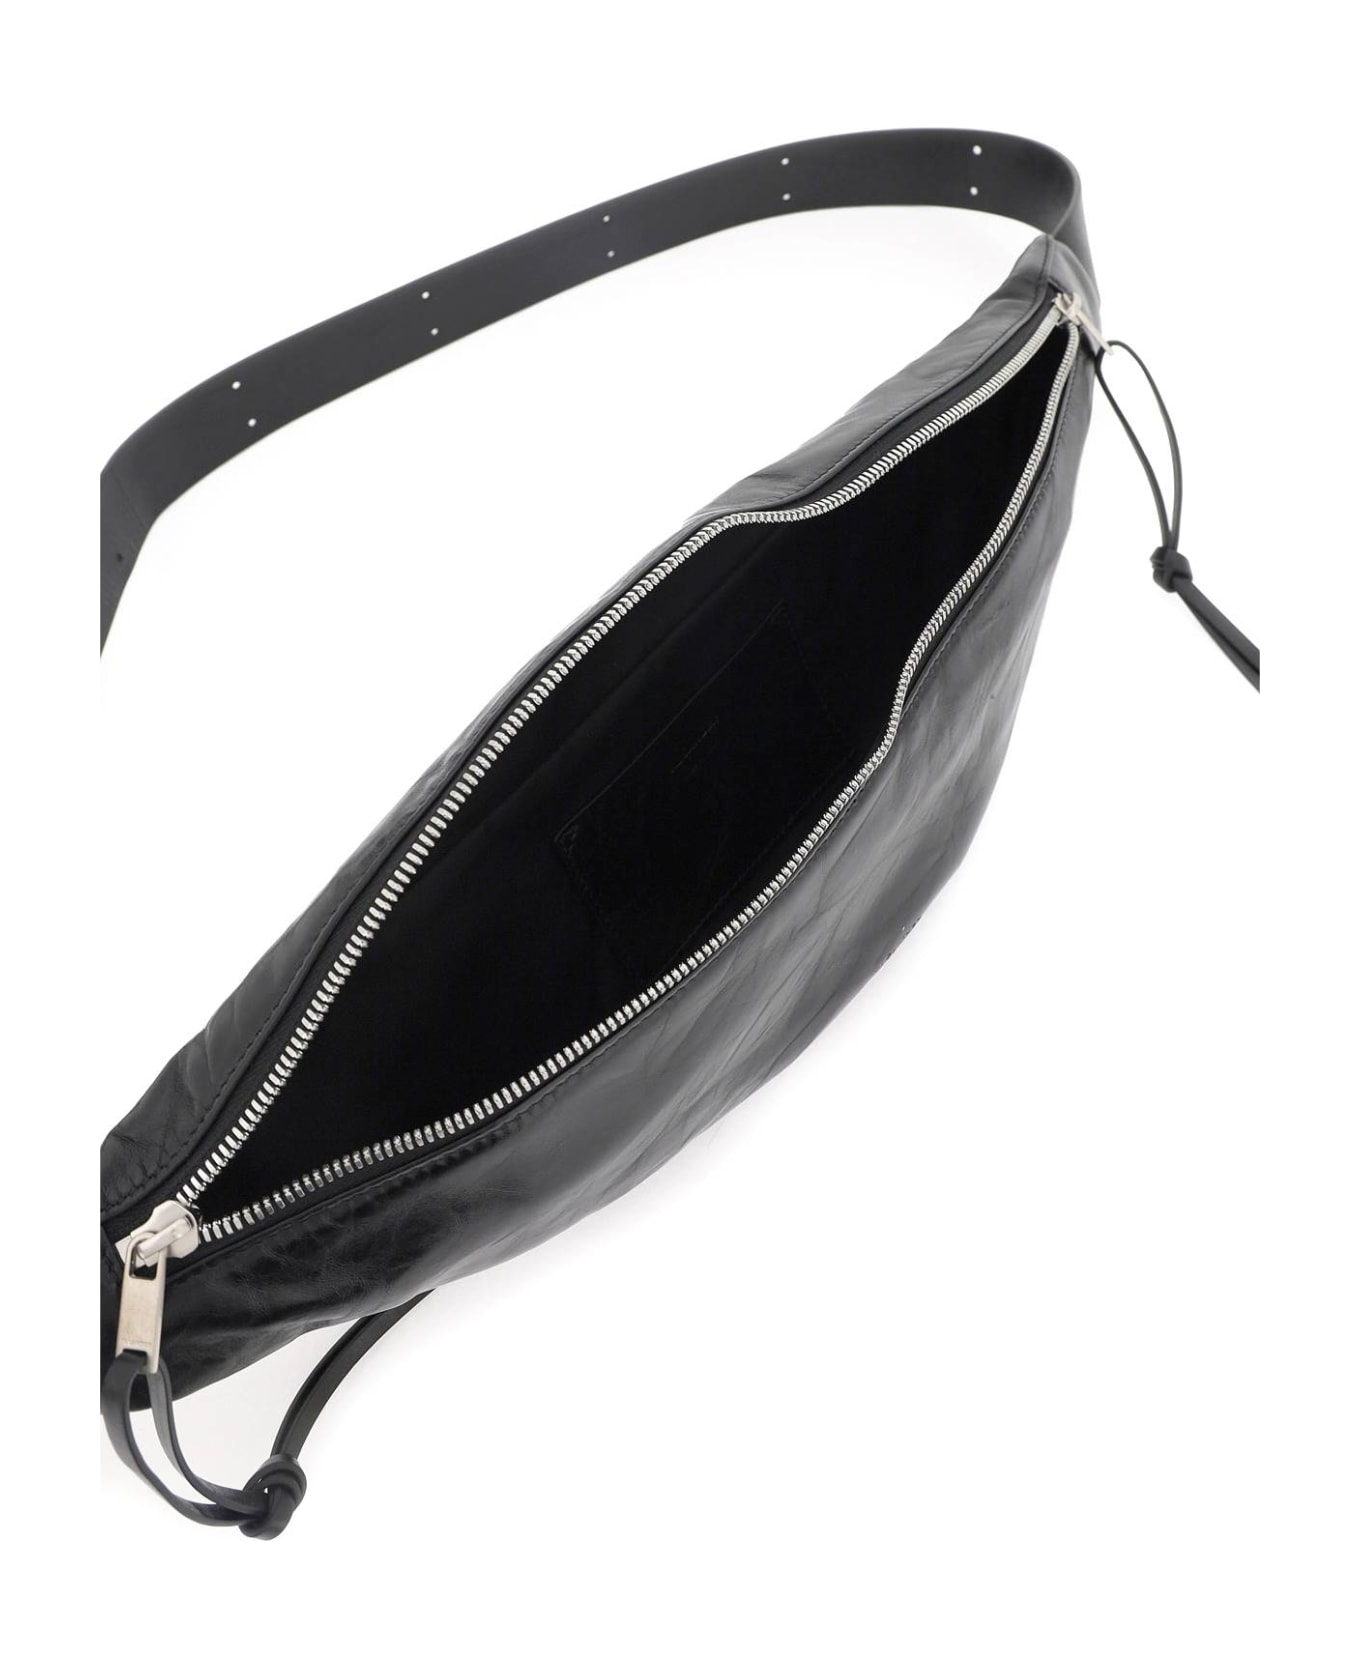 Jil Sander Black Leather Belt Bag - BLACK (Black)